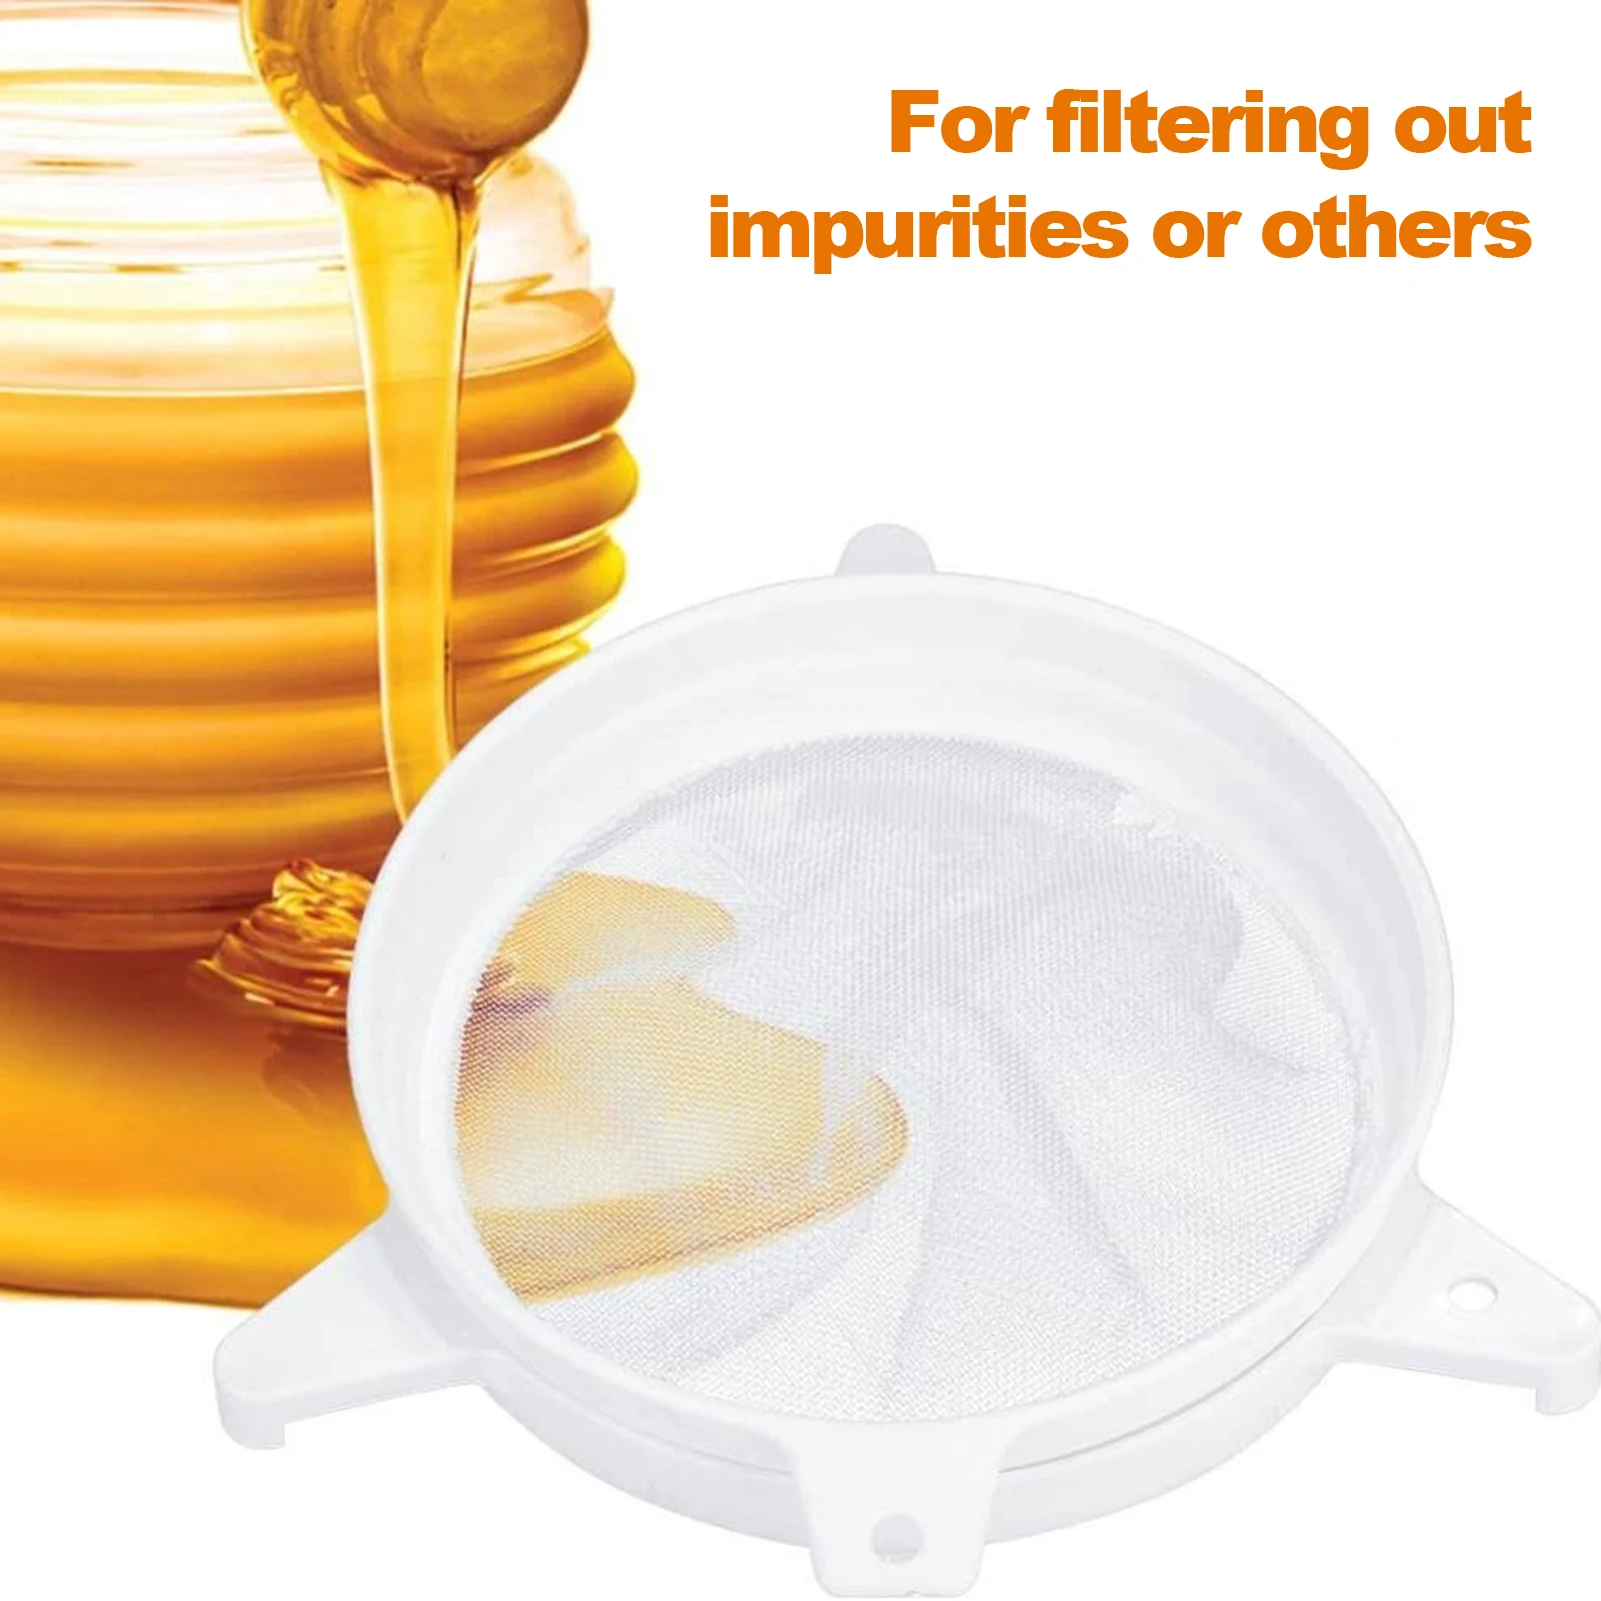 Dobbelt Mesh Honning Si Honning Emhætte Filter Dobbelt Sigte for Biavler, Køkken og Andre Filtrering ved Hjælp af Køkken Si